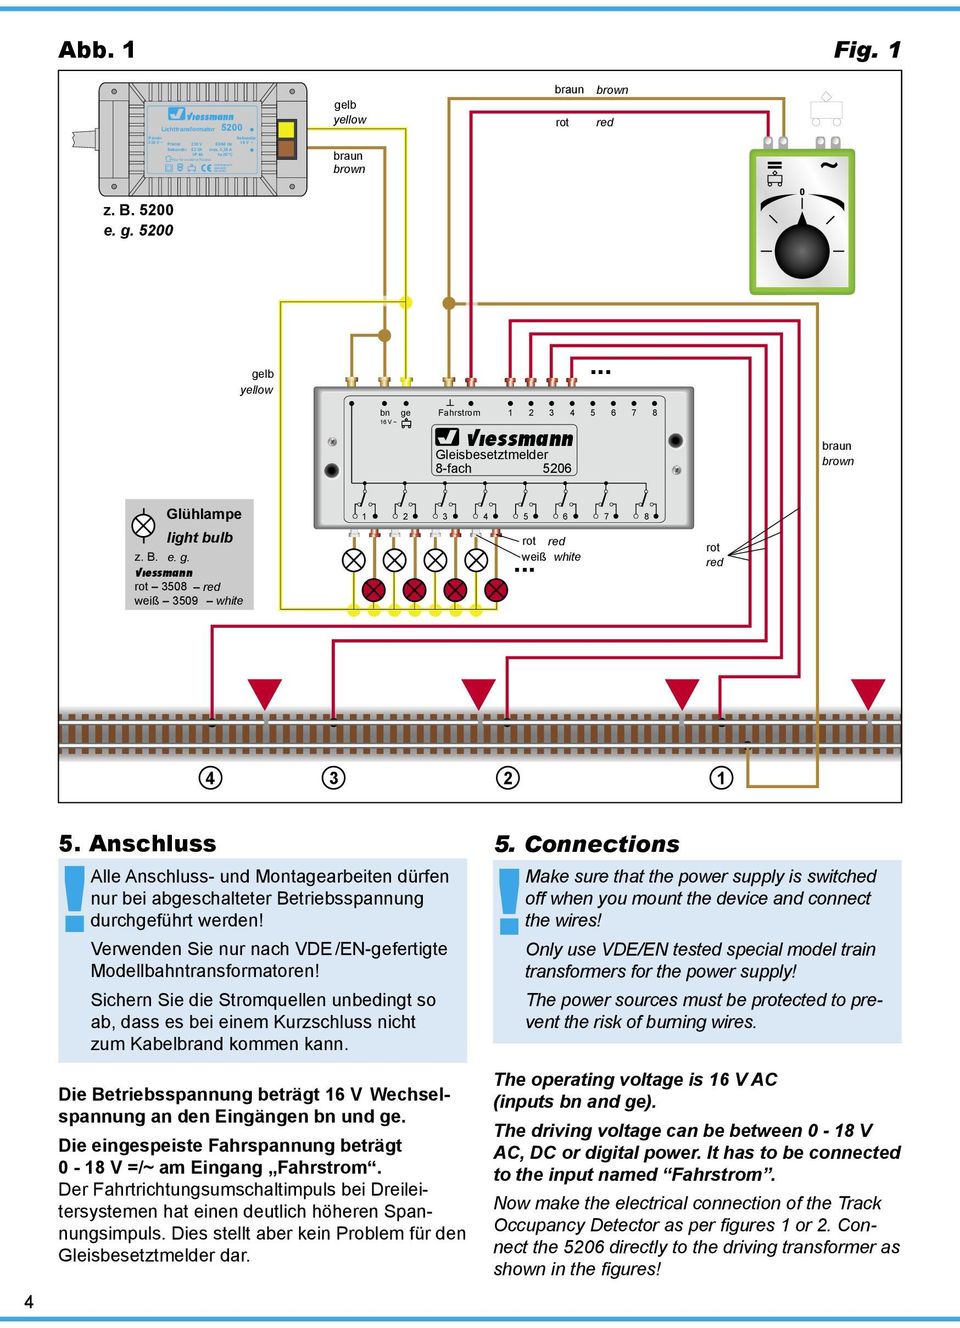 .. 4 3 2 1 4 5. Anschluss Alle Anschluss- und Montagearbeiten dürfen nur bei abgeschalteter Betriebsspannung durchgeführt werden! Verwenden Sie nur nach VDE /EN-gefertigte Modellbahntransformatoren!